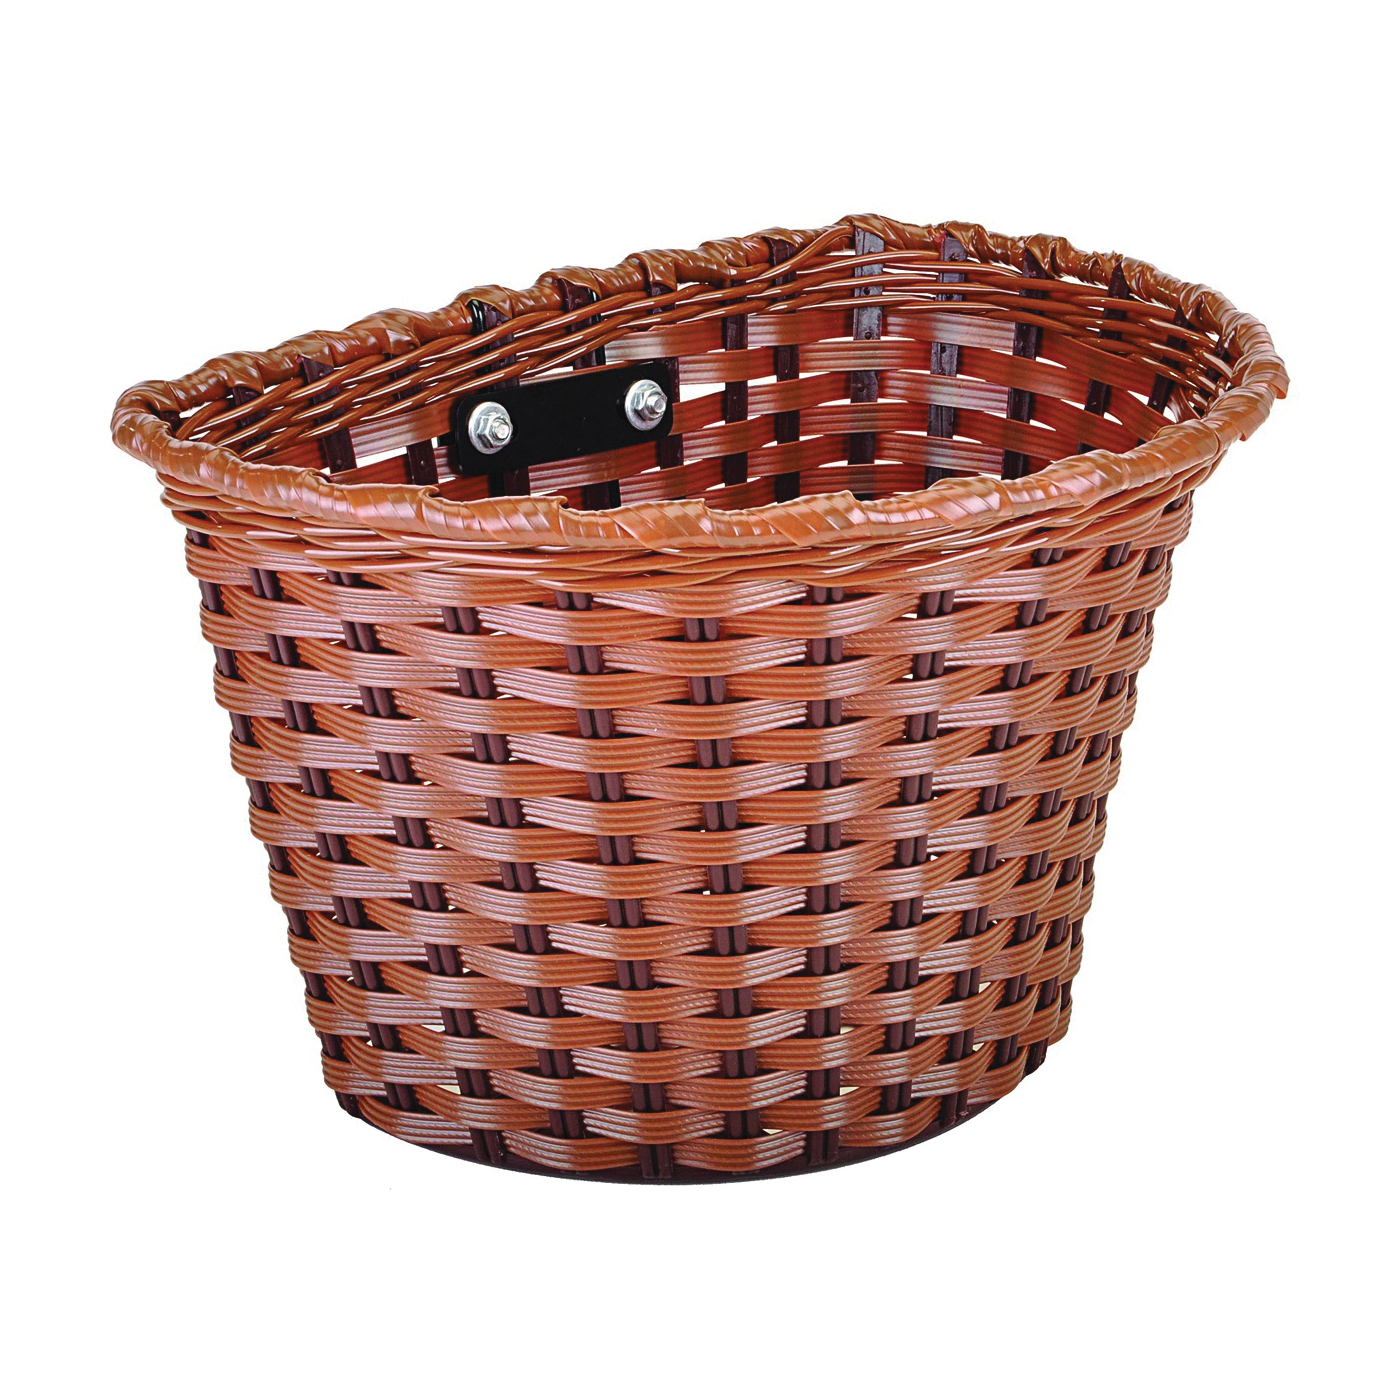 65226 Bicycle Basket, Medium, Plastic, Brown